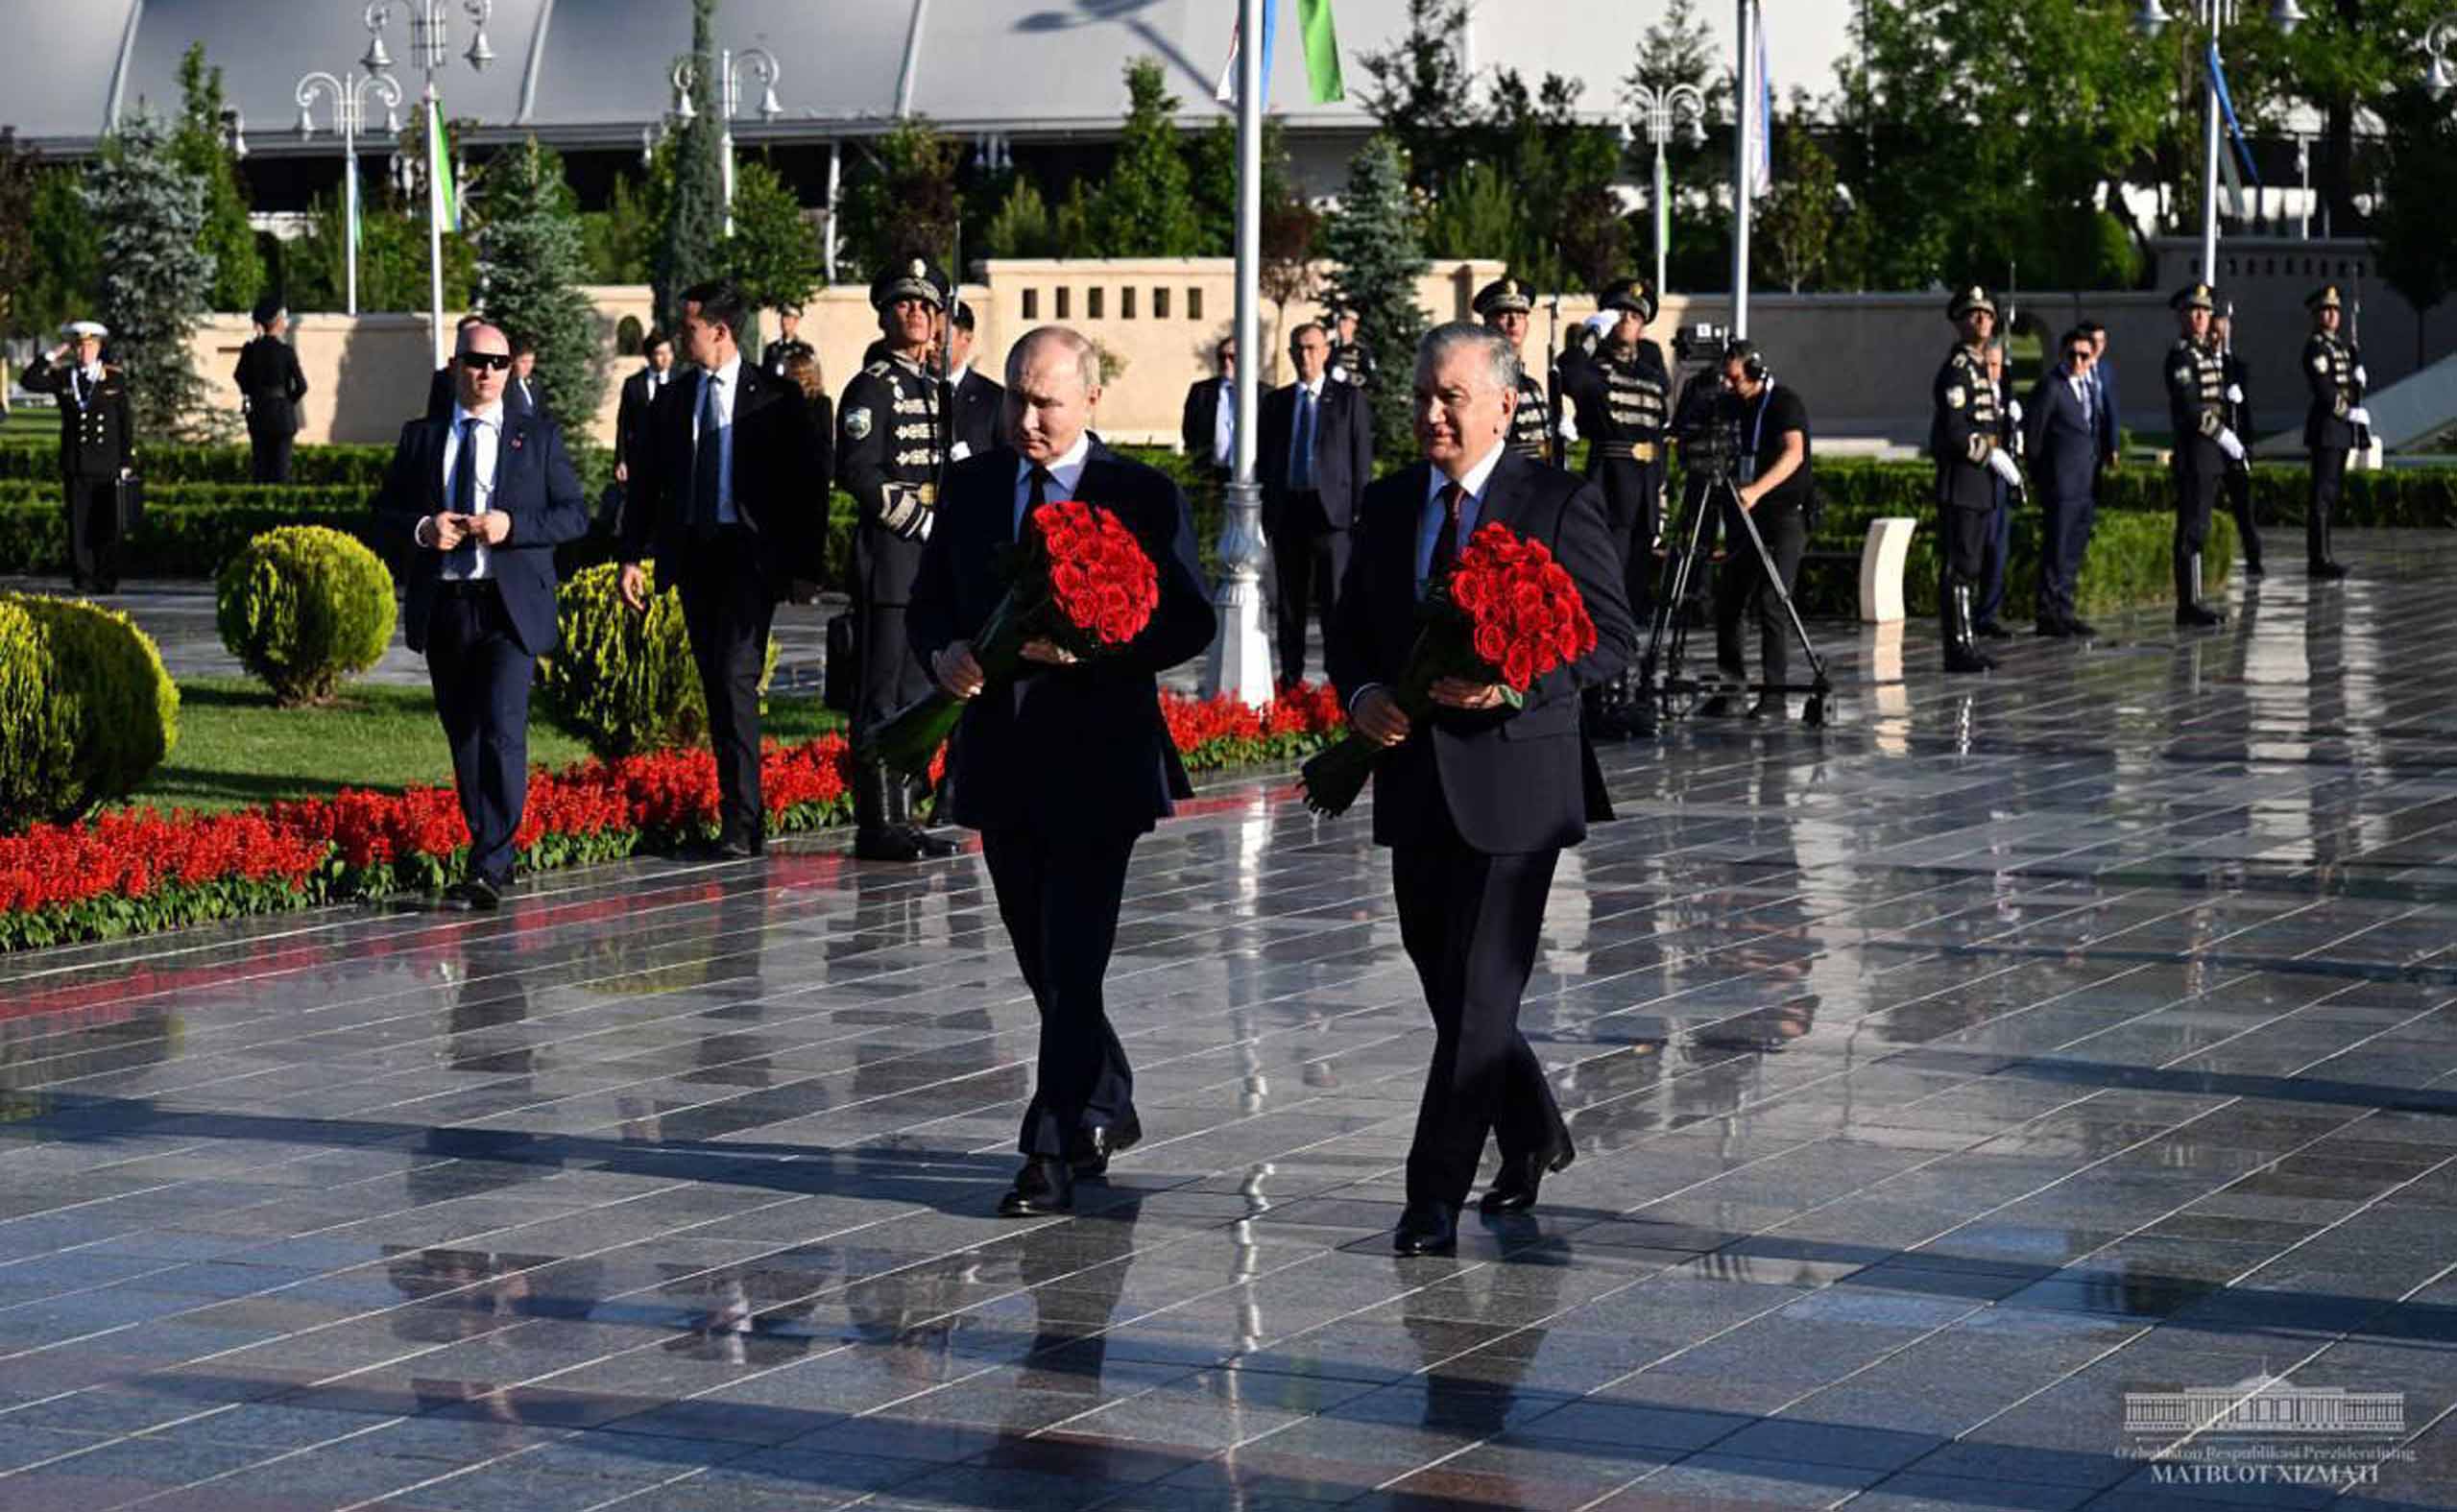 В рамках узбекско-российского саммита президенты Шавкат Мирзиеев и Владимир Путин посетили мемориальный комплекс “Парк Победы” в Ташкенте